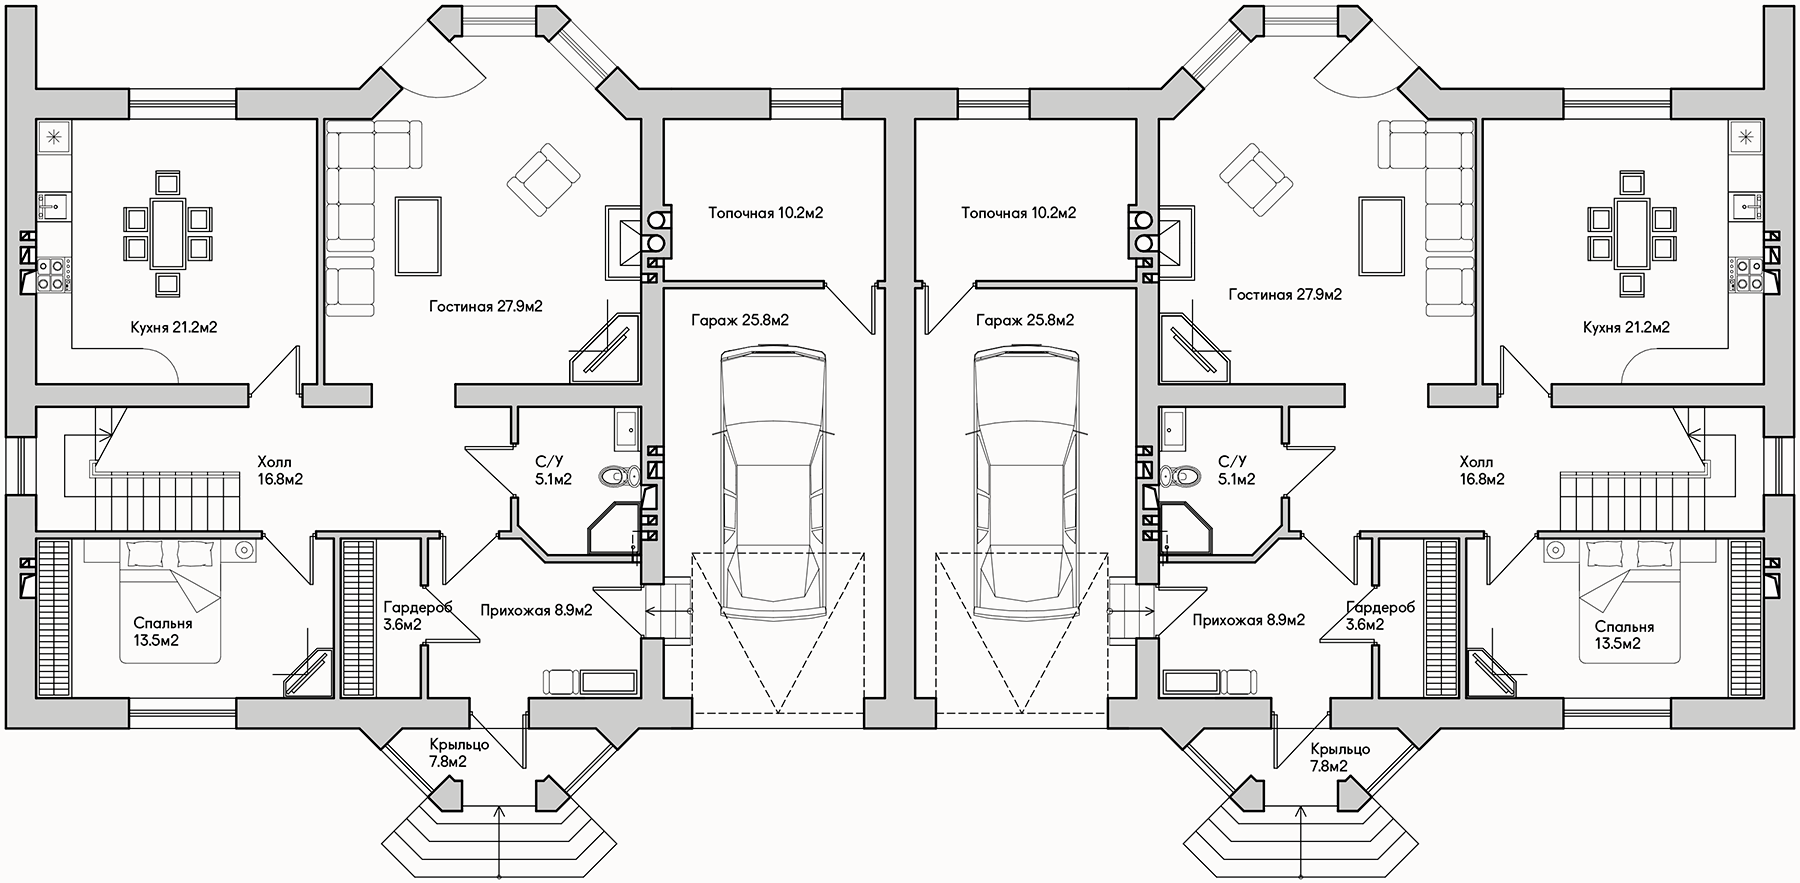 Планирока 1-го этажа в проекте Просторный таунхаус с гаражом TP-290